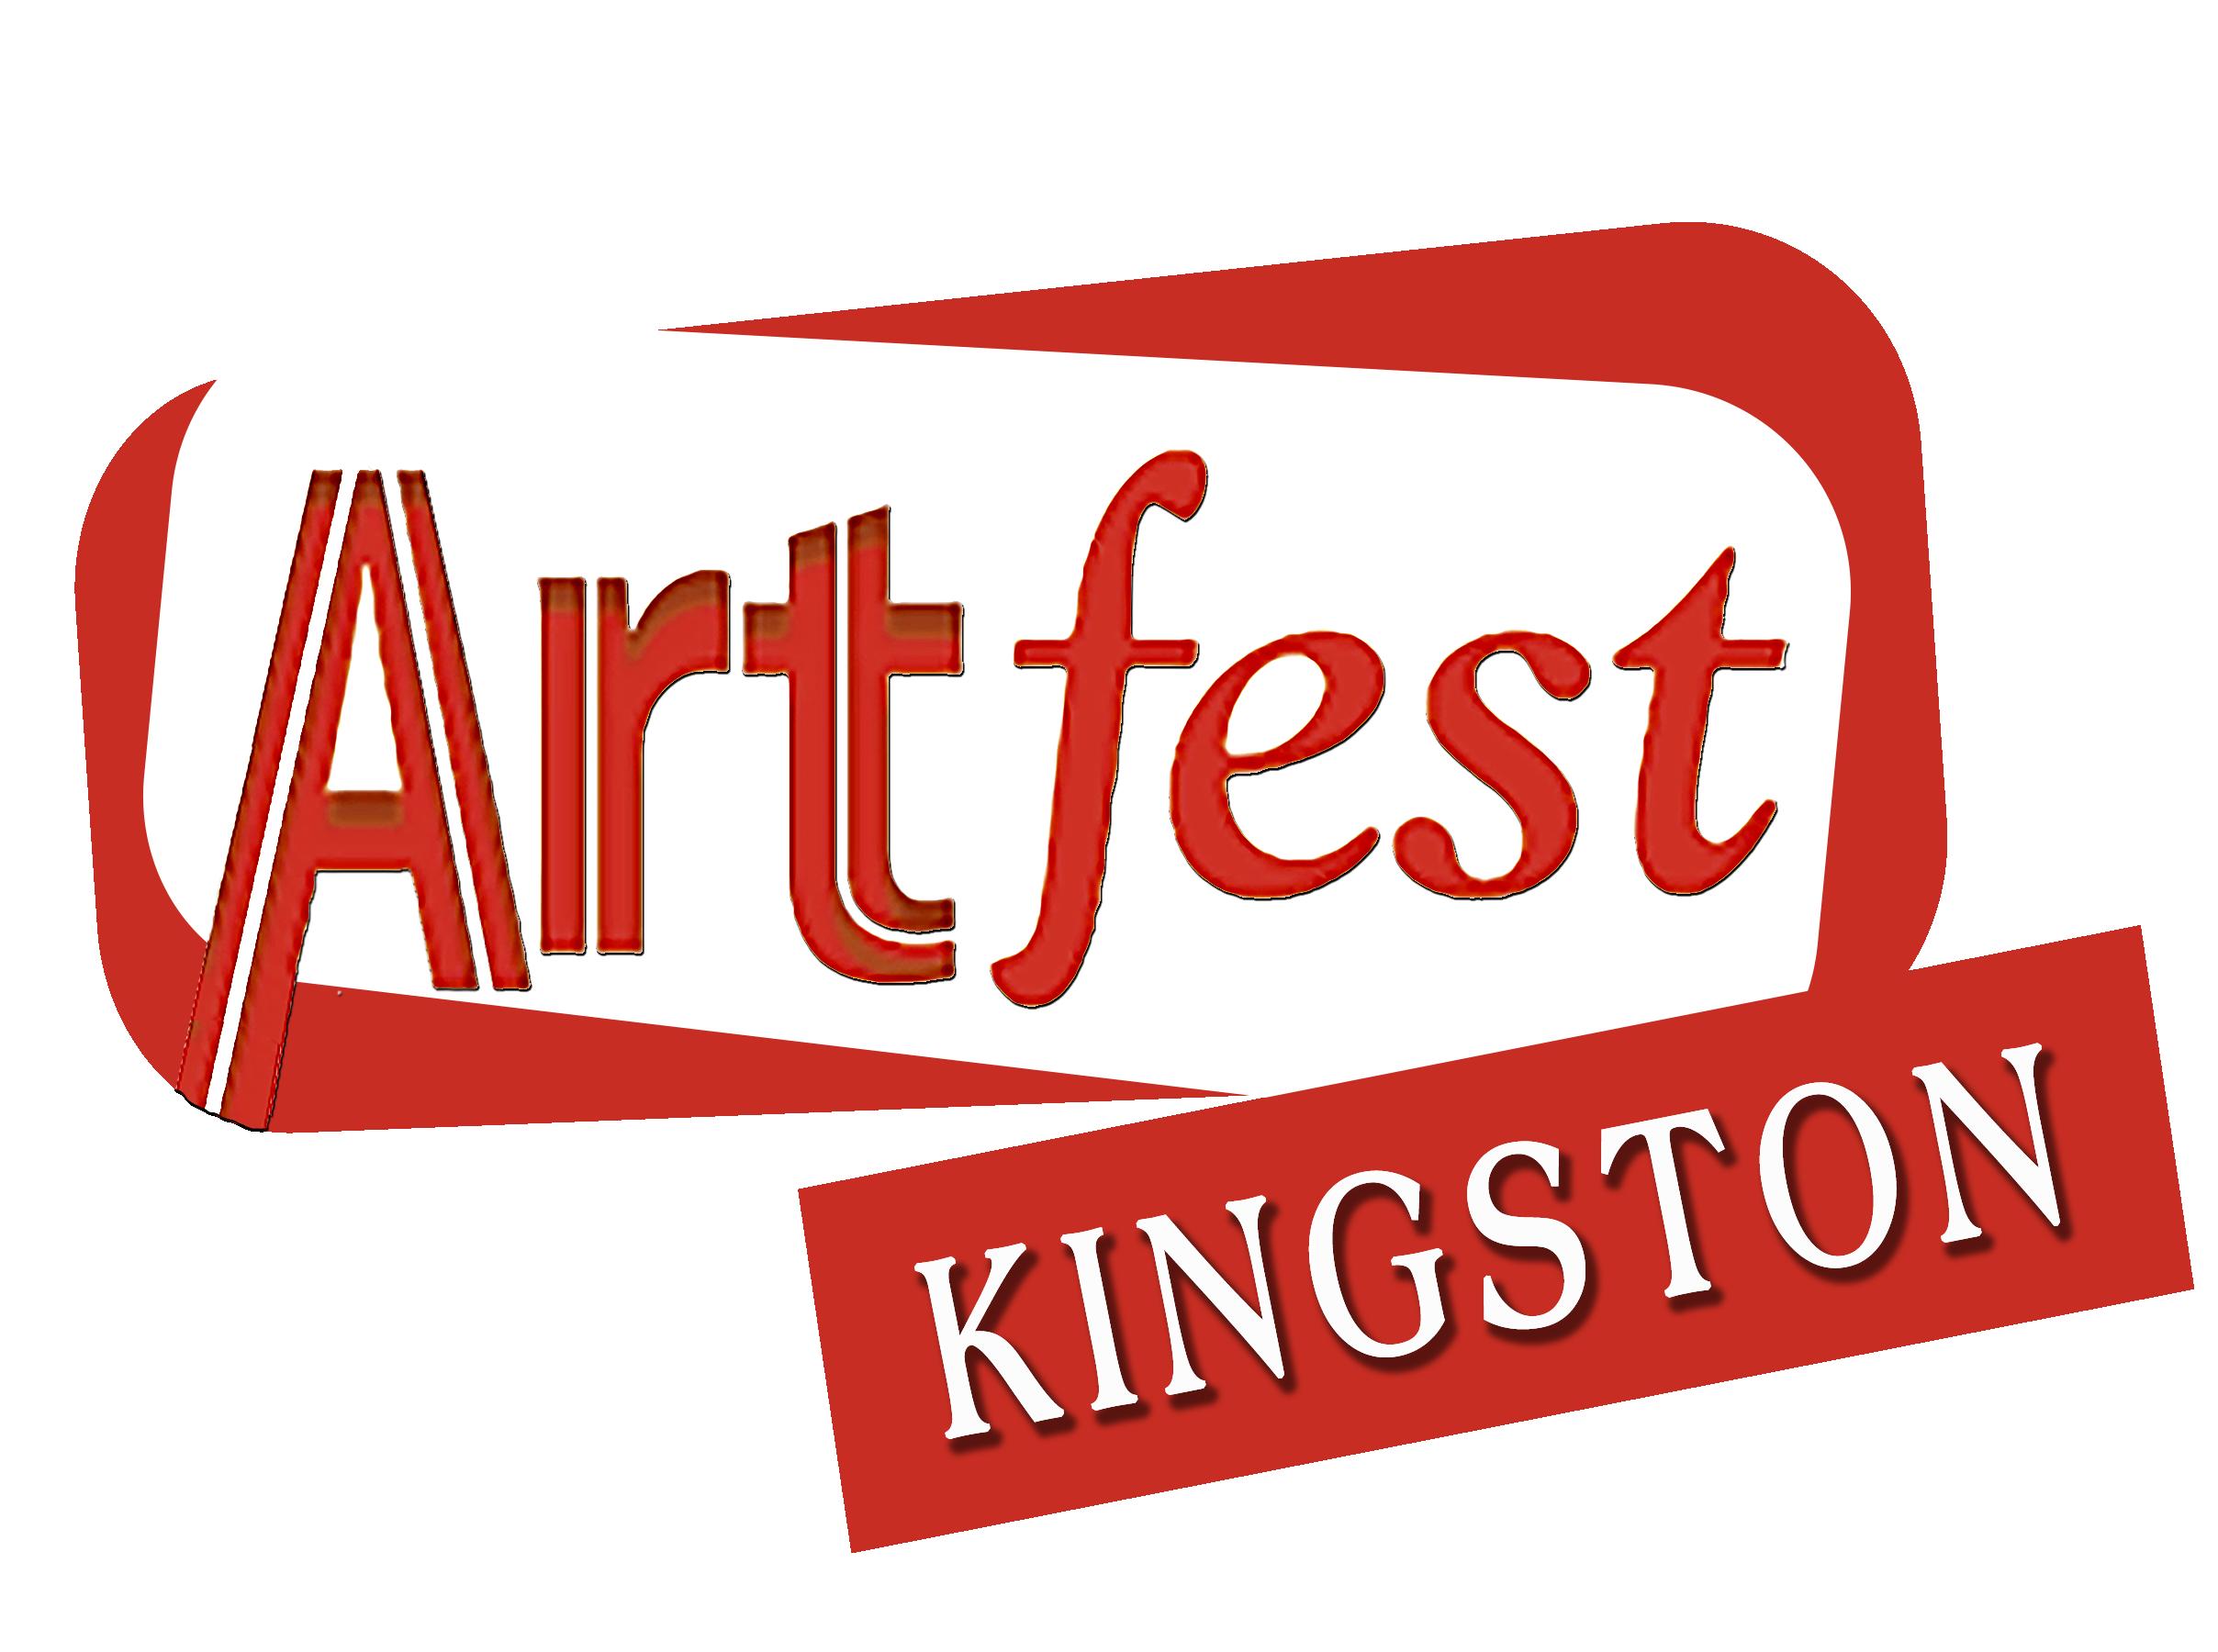 Artfest Kingston